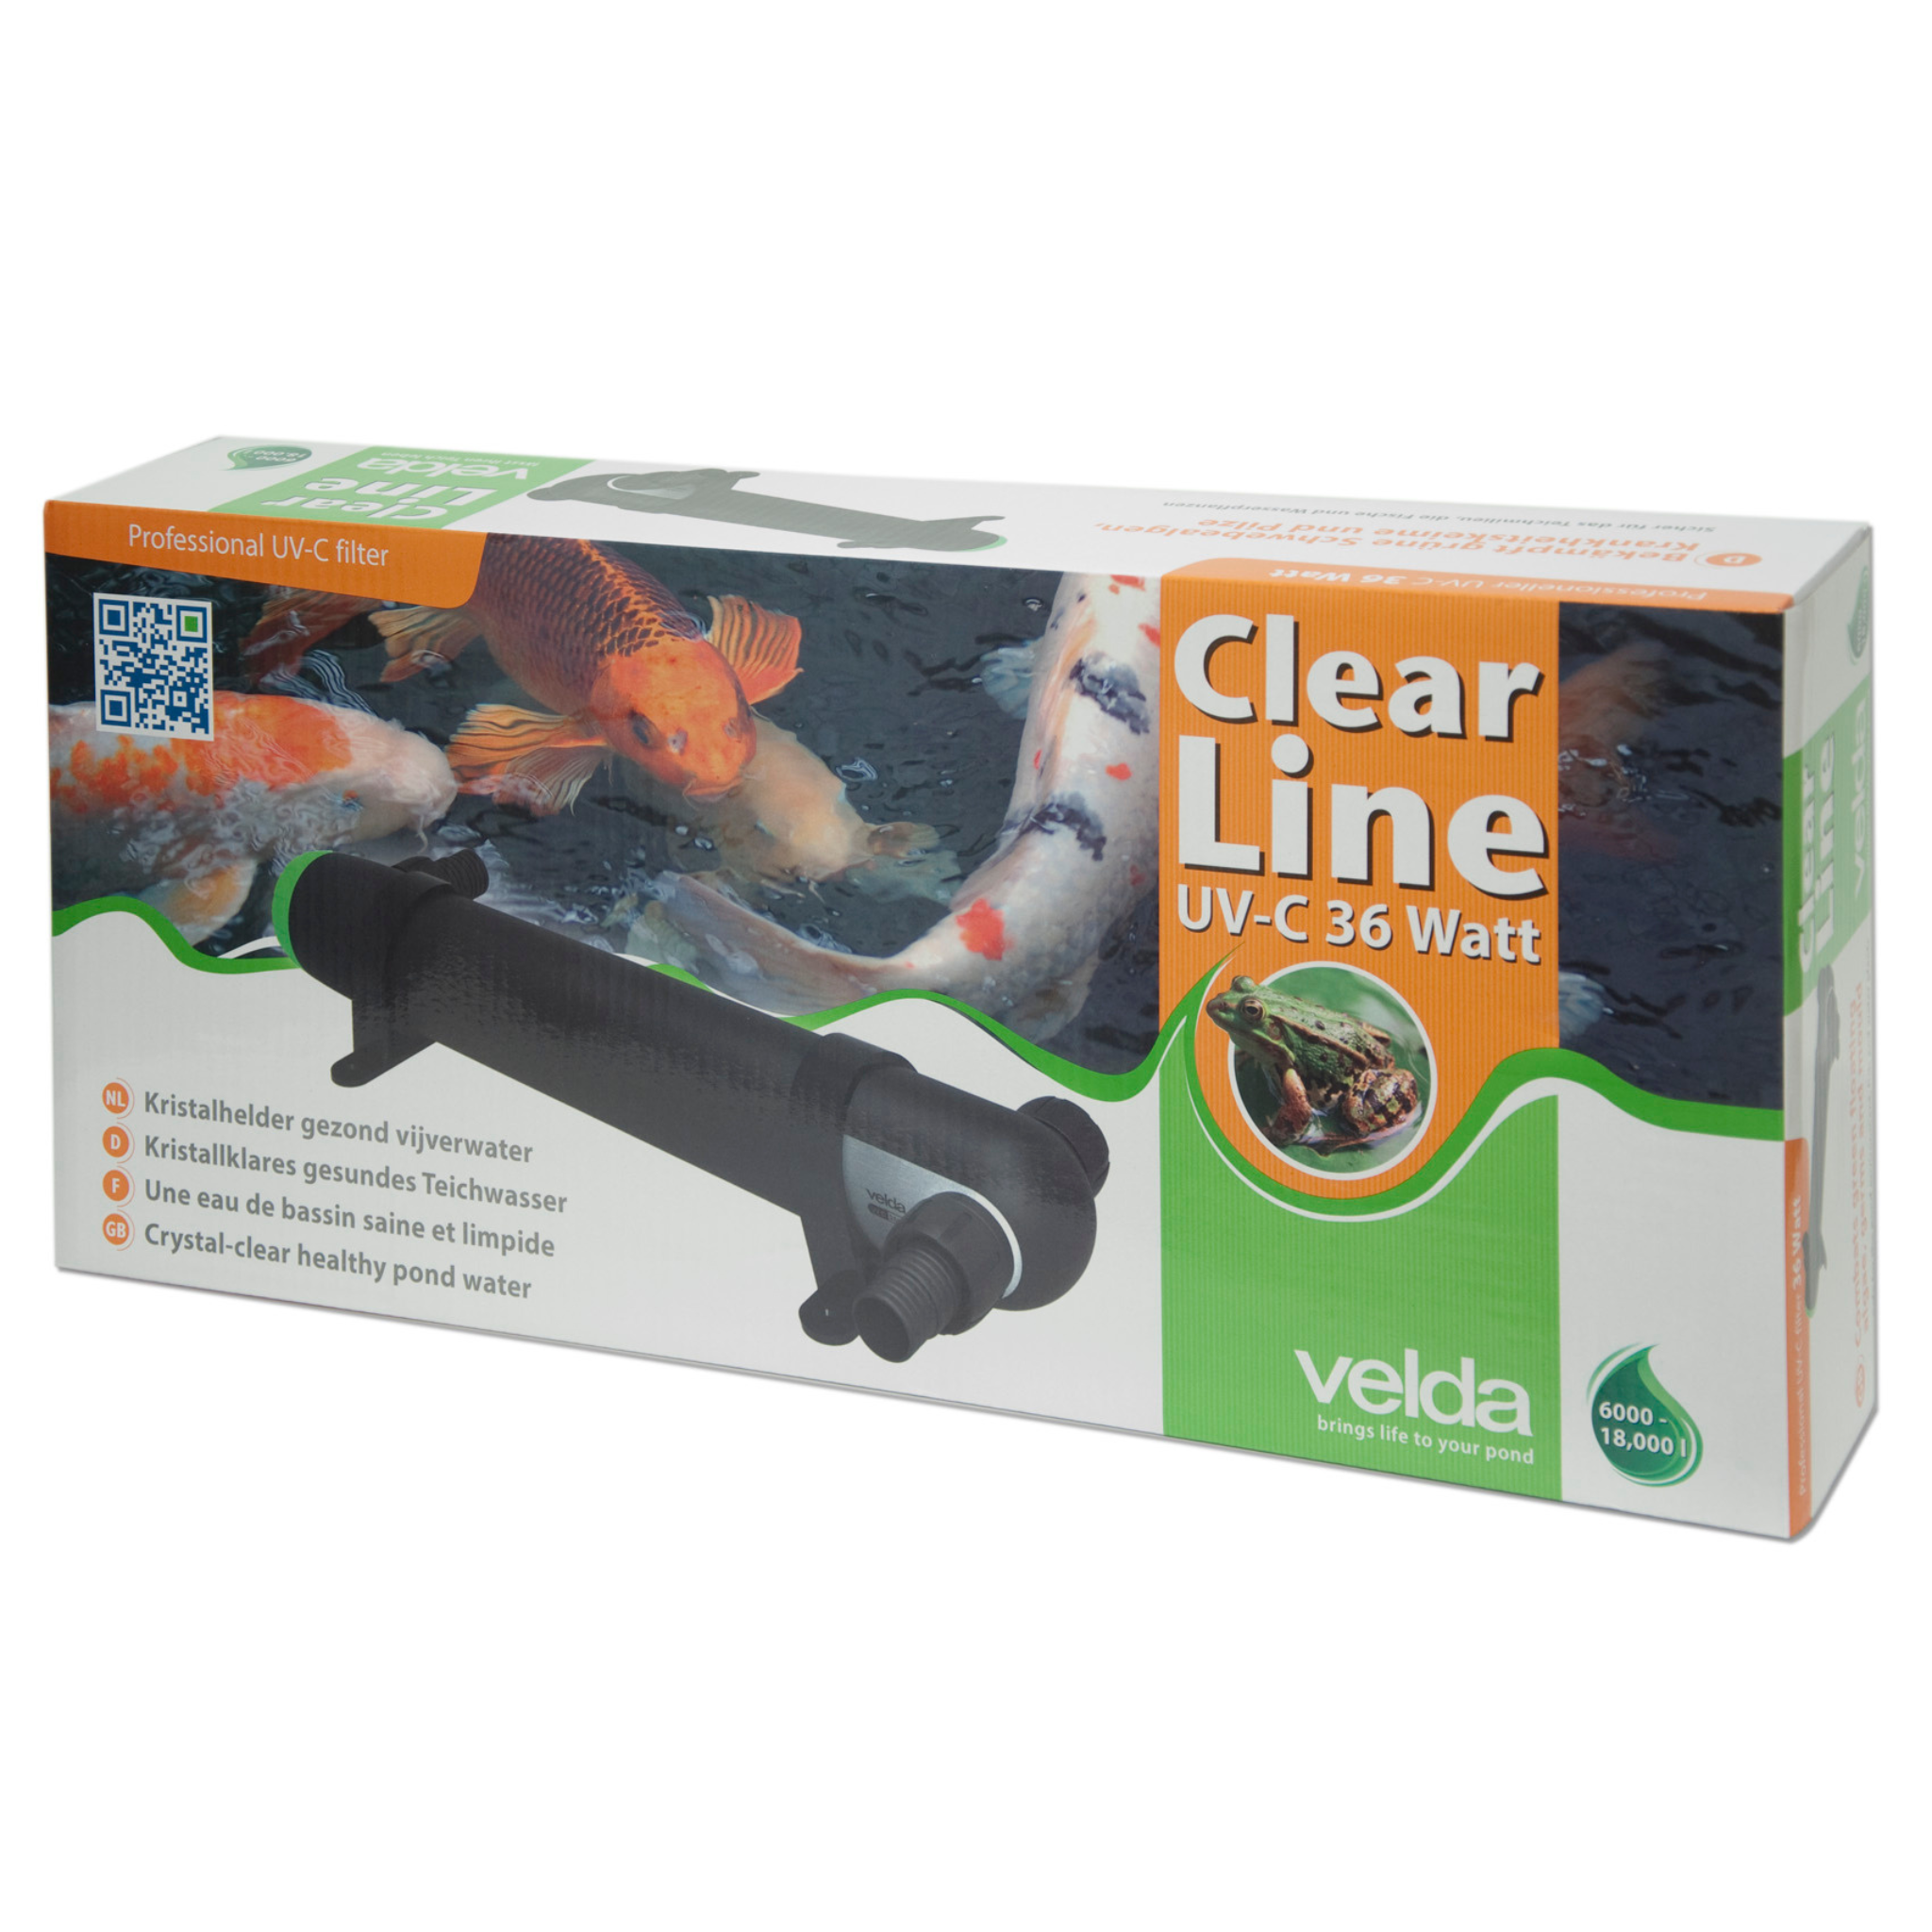 Clear Line UV-C 36 Watt Verpackung